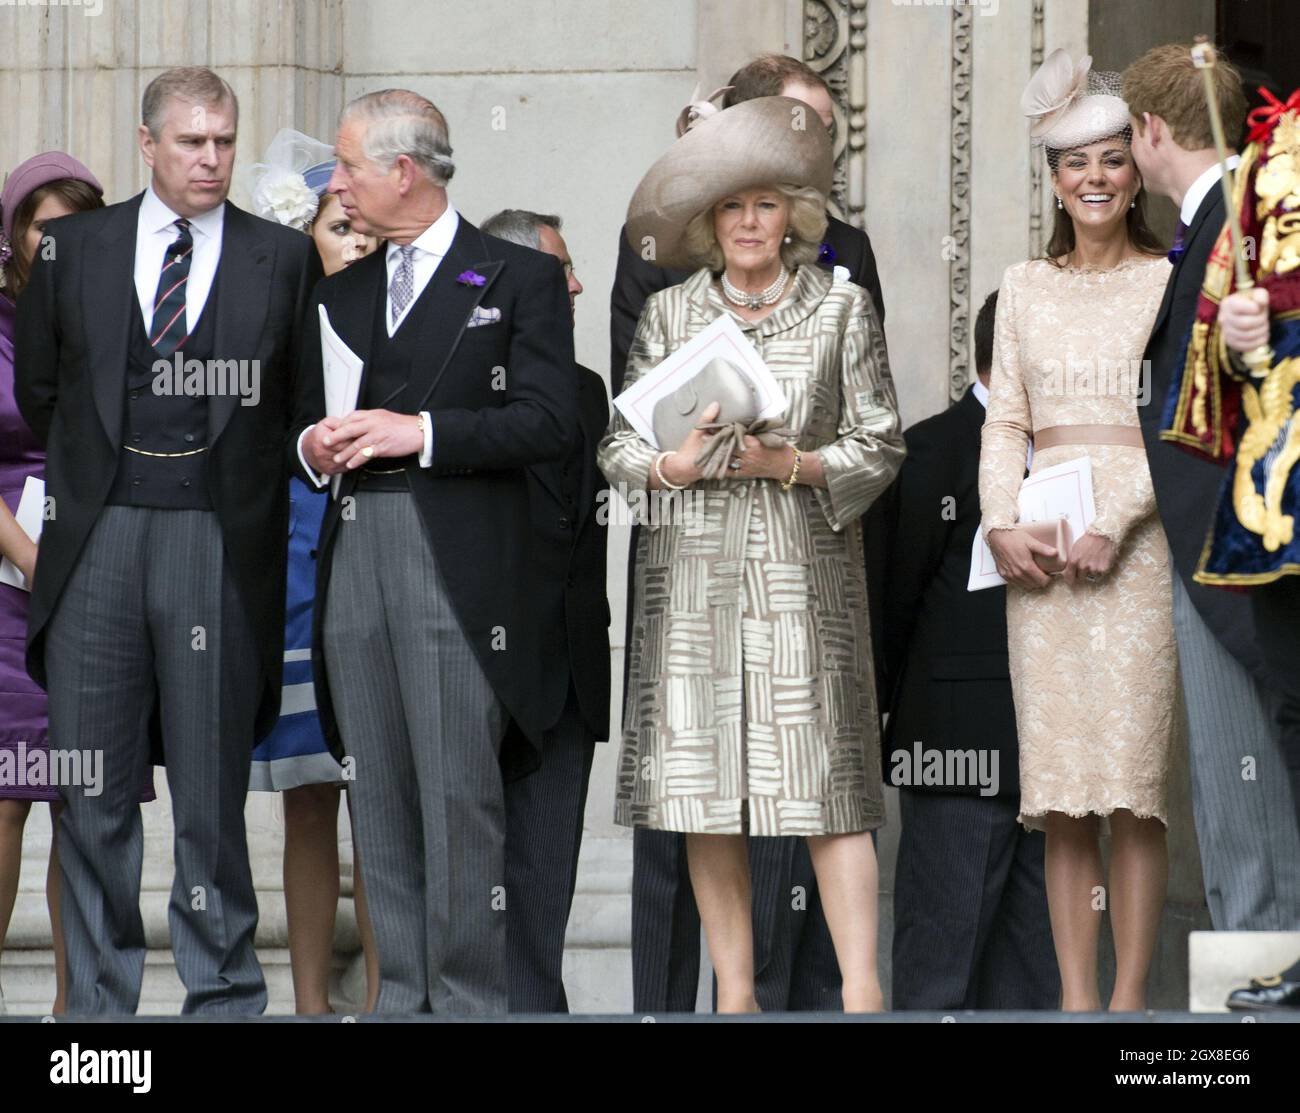 Prince Andrew, duc de York, Prince Charles, prince de Galles, Camilla,La duchesse de Cornwall et Catherine, la duchesse de Cambridge, assistent au service du jubilé de diamant de la Reine de Thanksgiving à la cathédrale Saint-Paul à Londres le 5 juin 2012. Banque D'Images